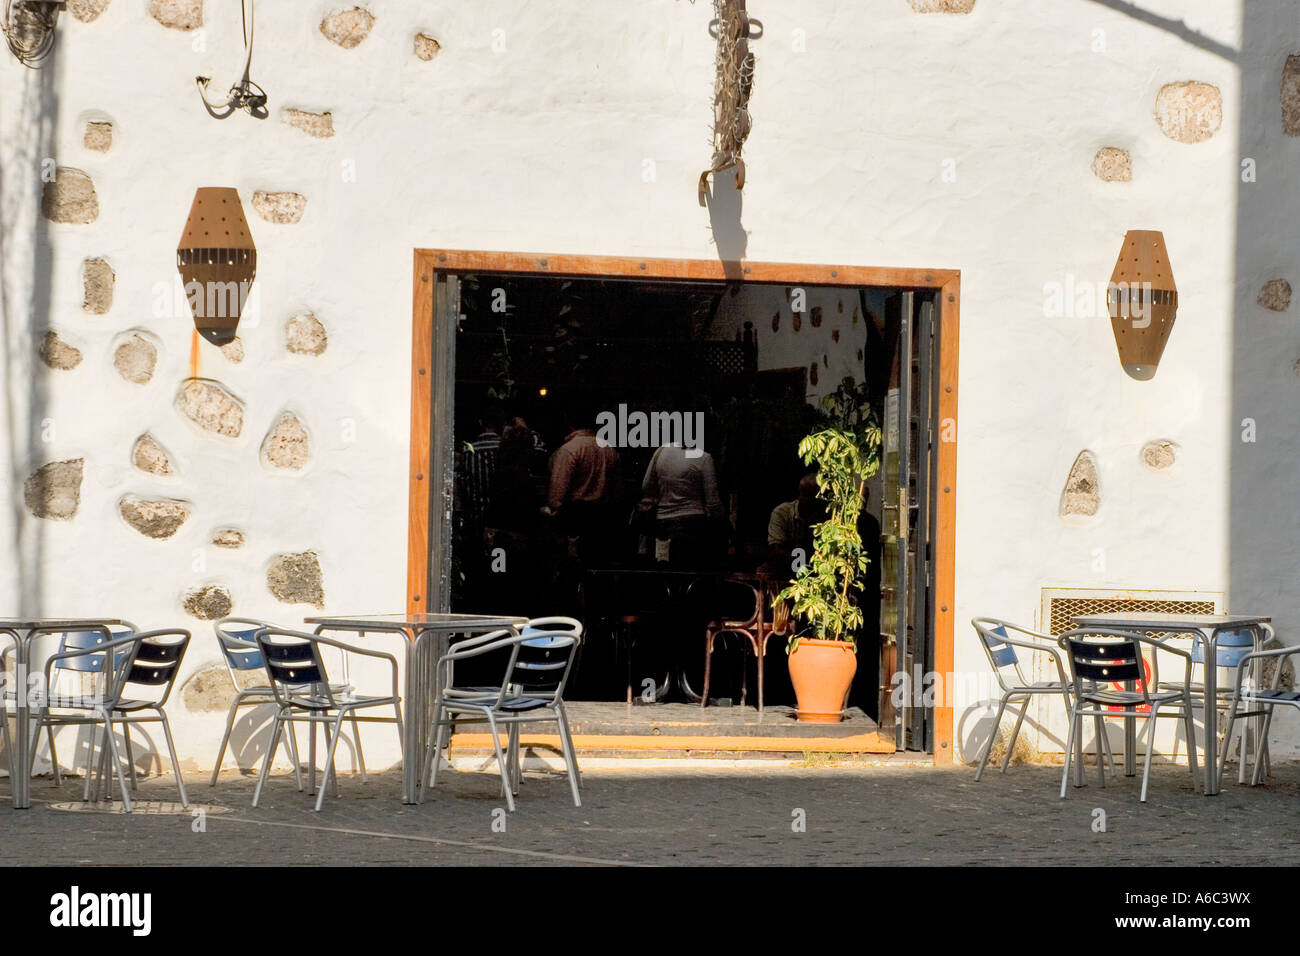 Die Bar Recova ein cooler Ort für einen Snack und Adrink an einem heißen Nachmittag. Arricife, Lanzarote Kanarische Inseln, Spanien Stockfoto